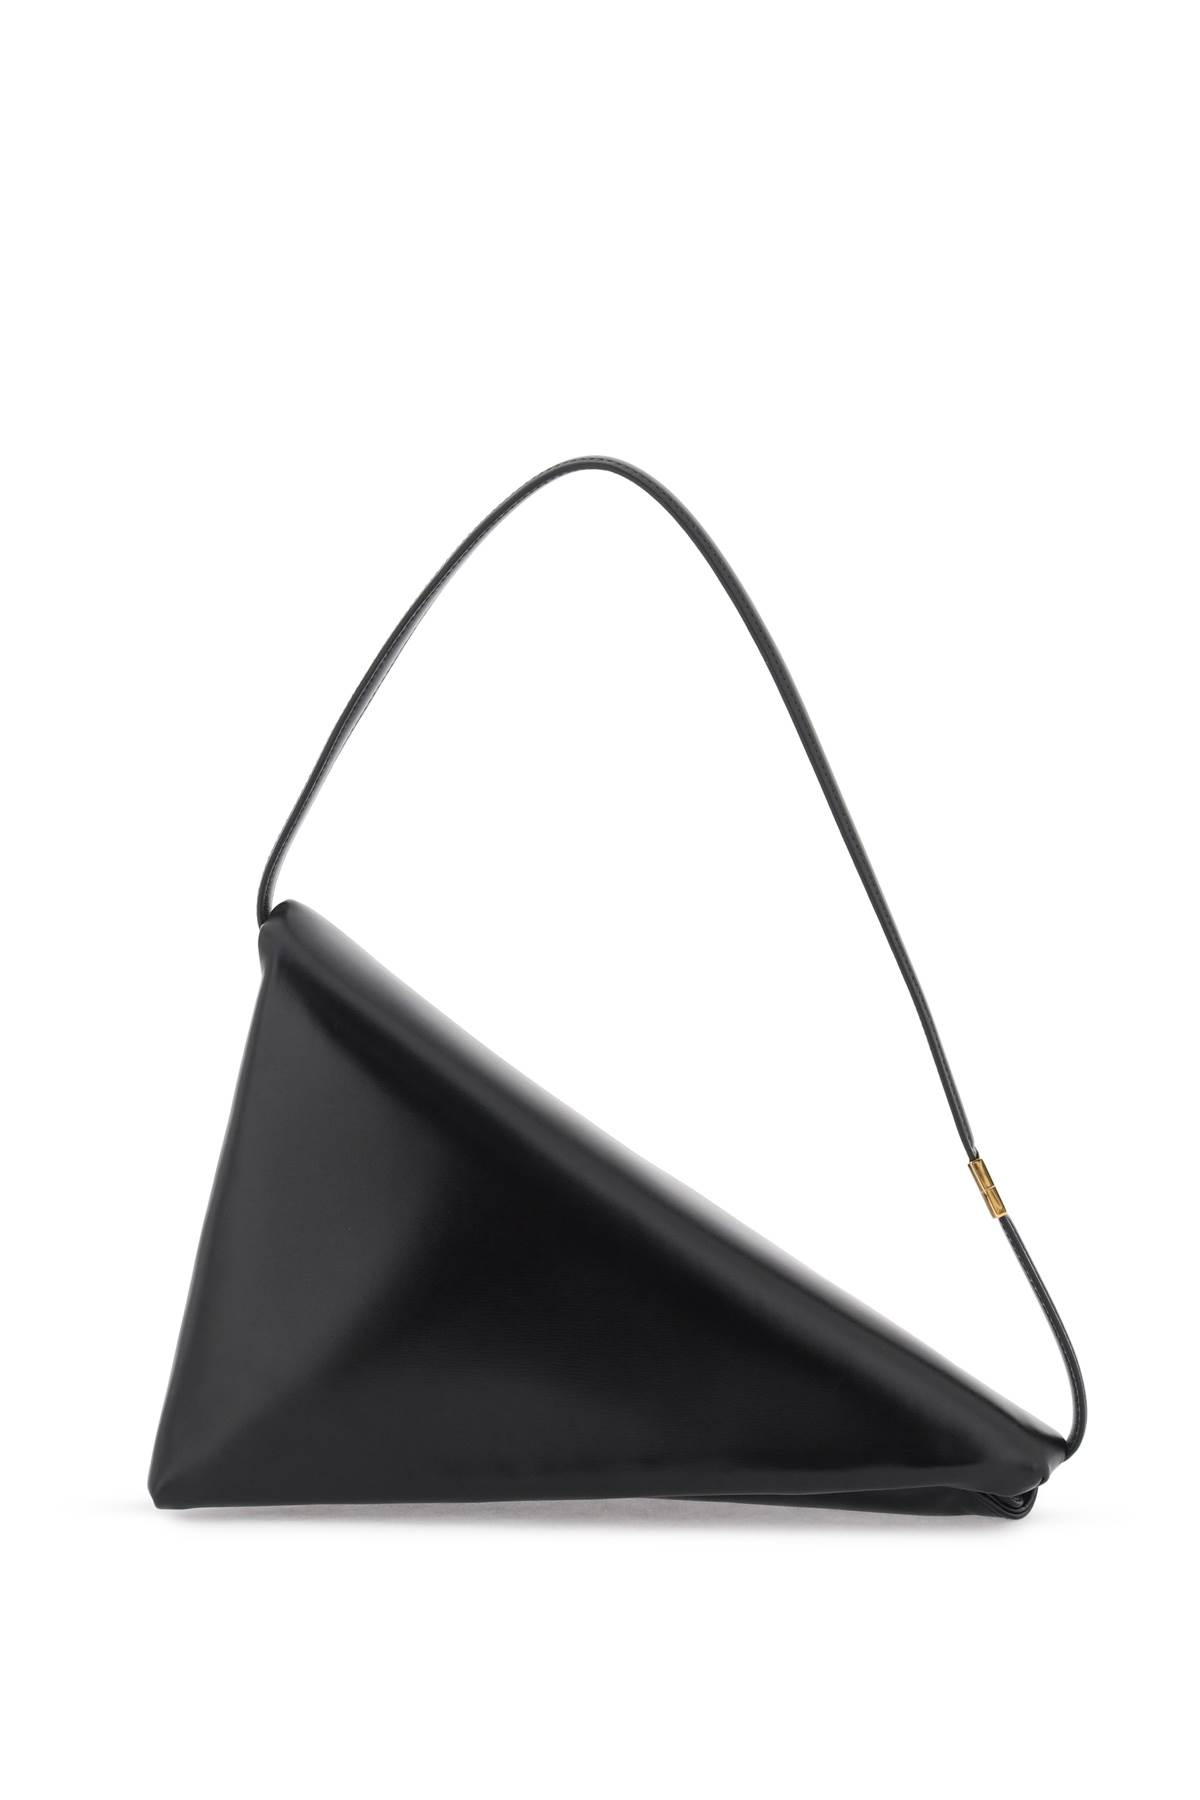 Leather Prisma Triangle Bag Marni